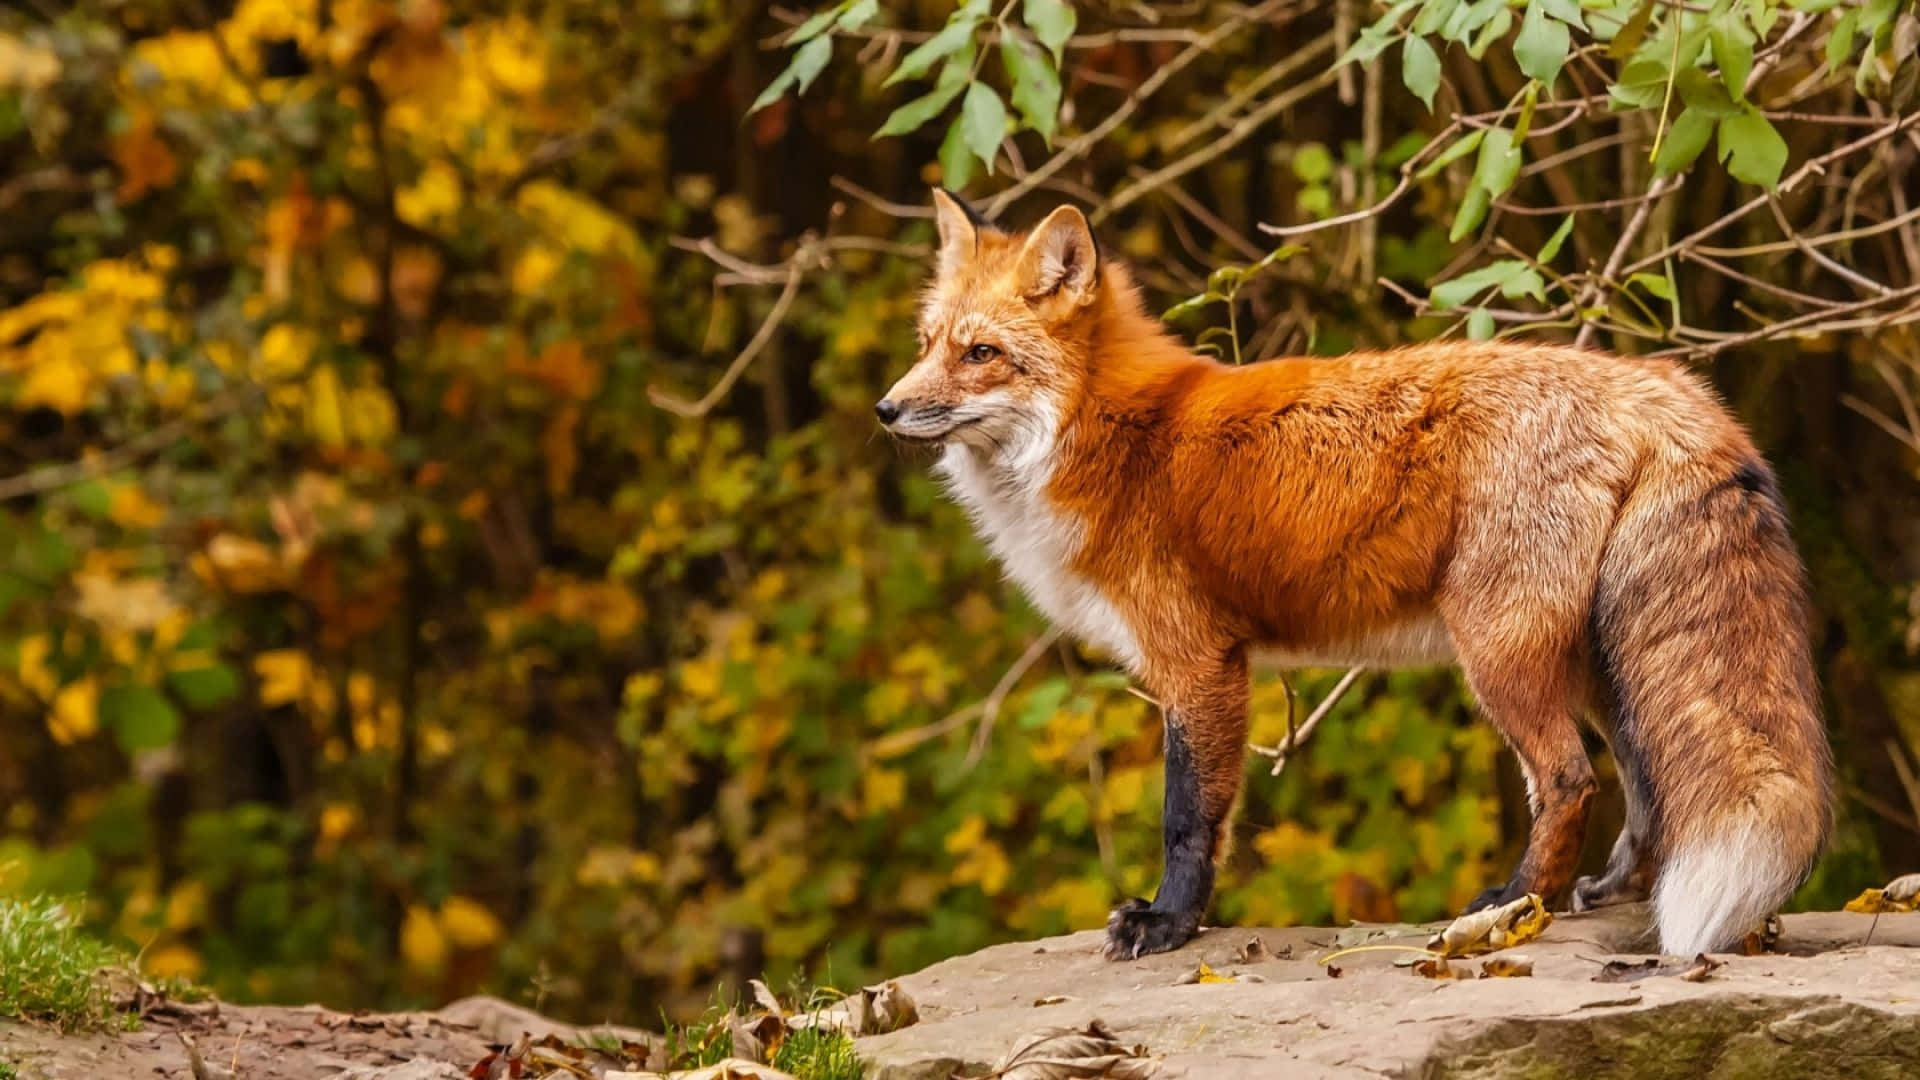 A Beautiful Fox Enjoying Nature